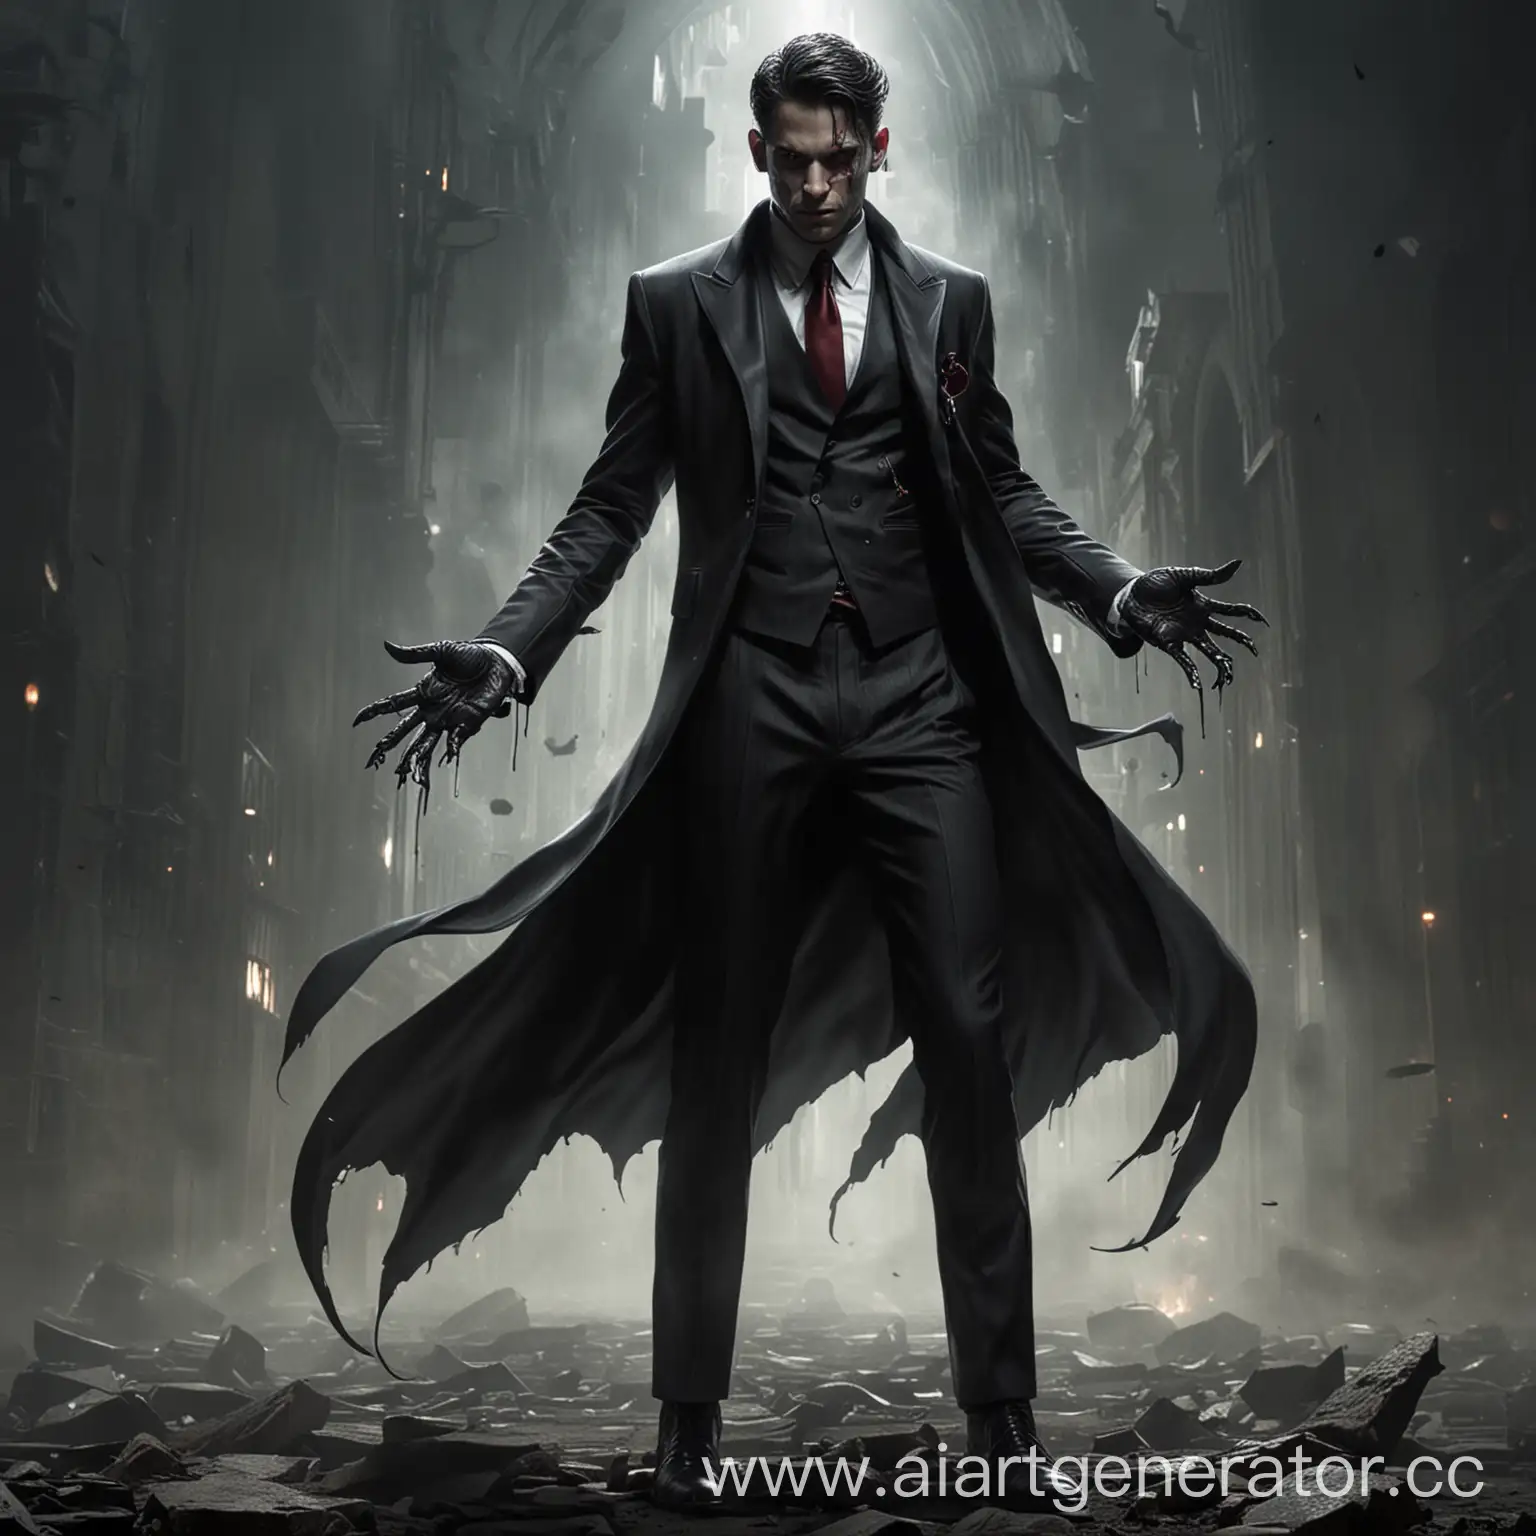 Son-of-Lucifer-in-Dark-Suit